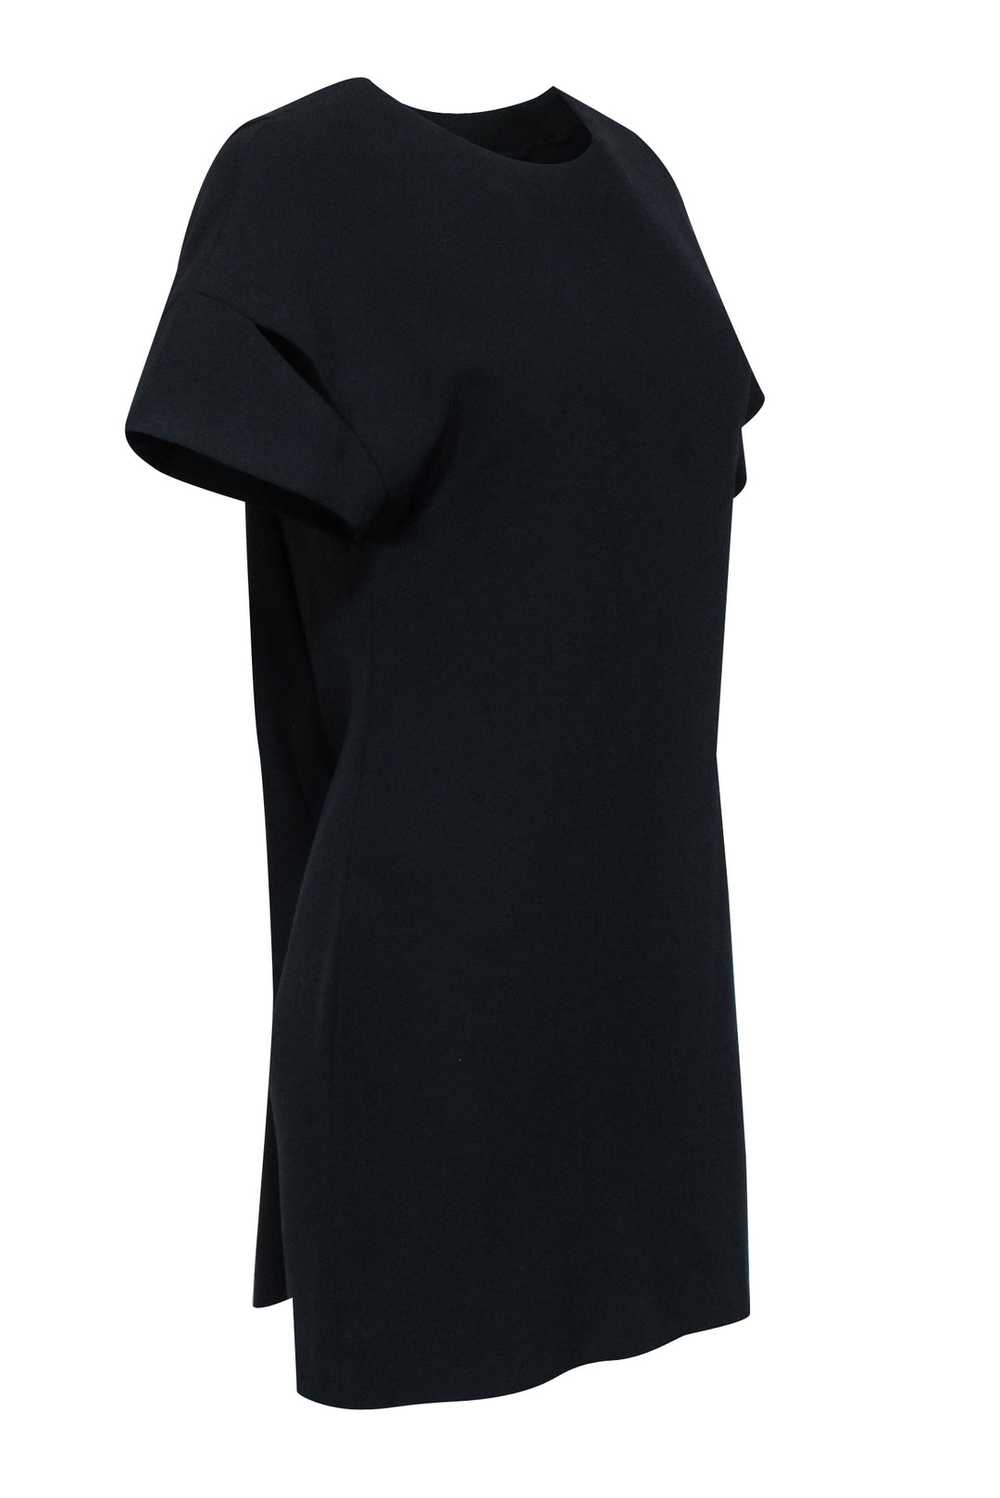 IRO - Black Short Sleeve Mini V-Back Dress Sz 4 - image 2